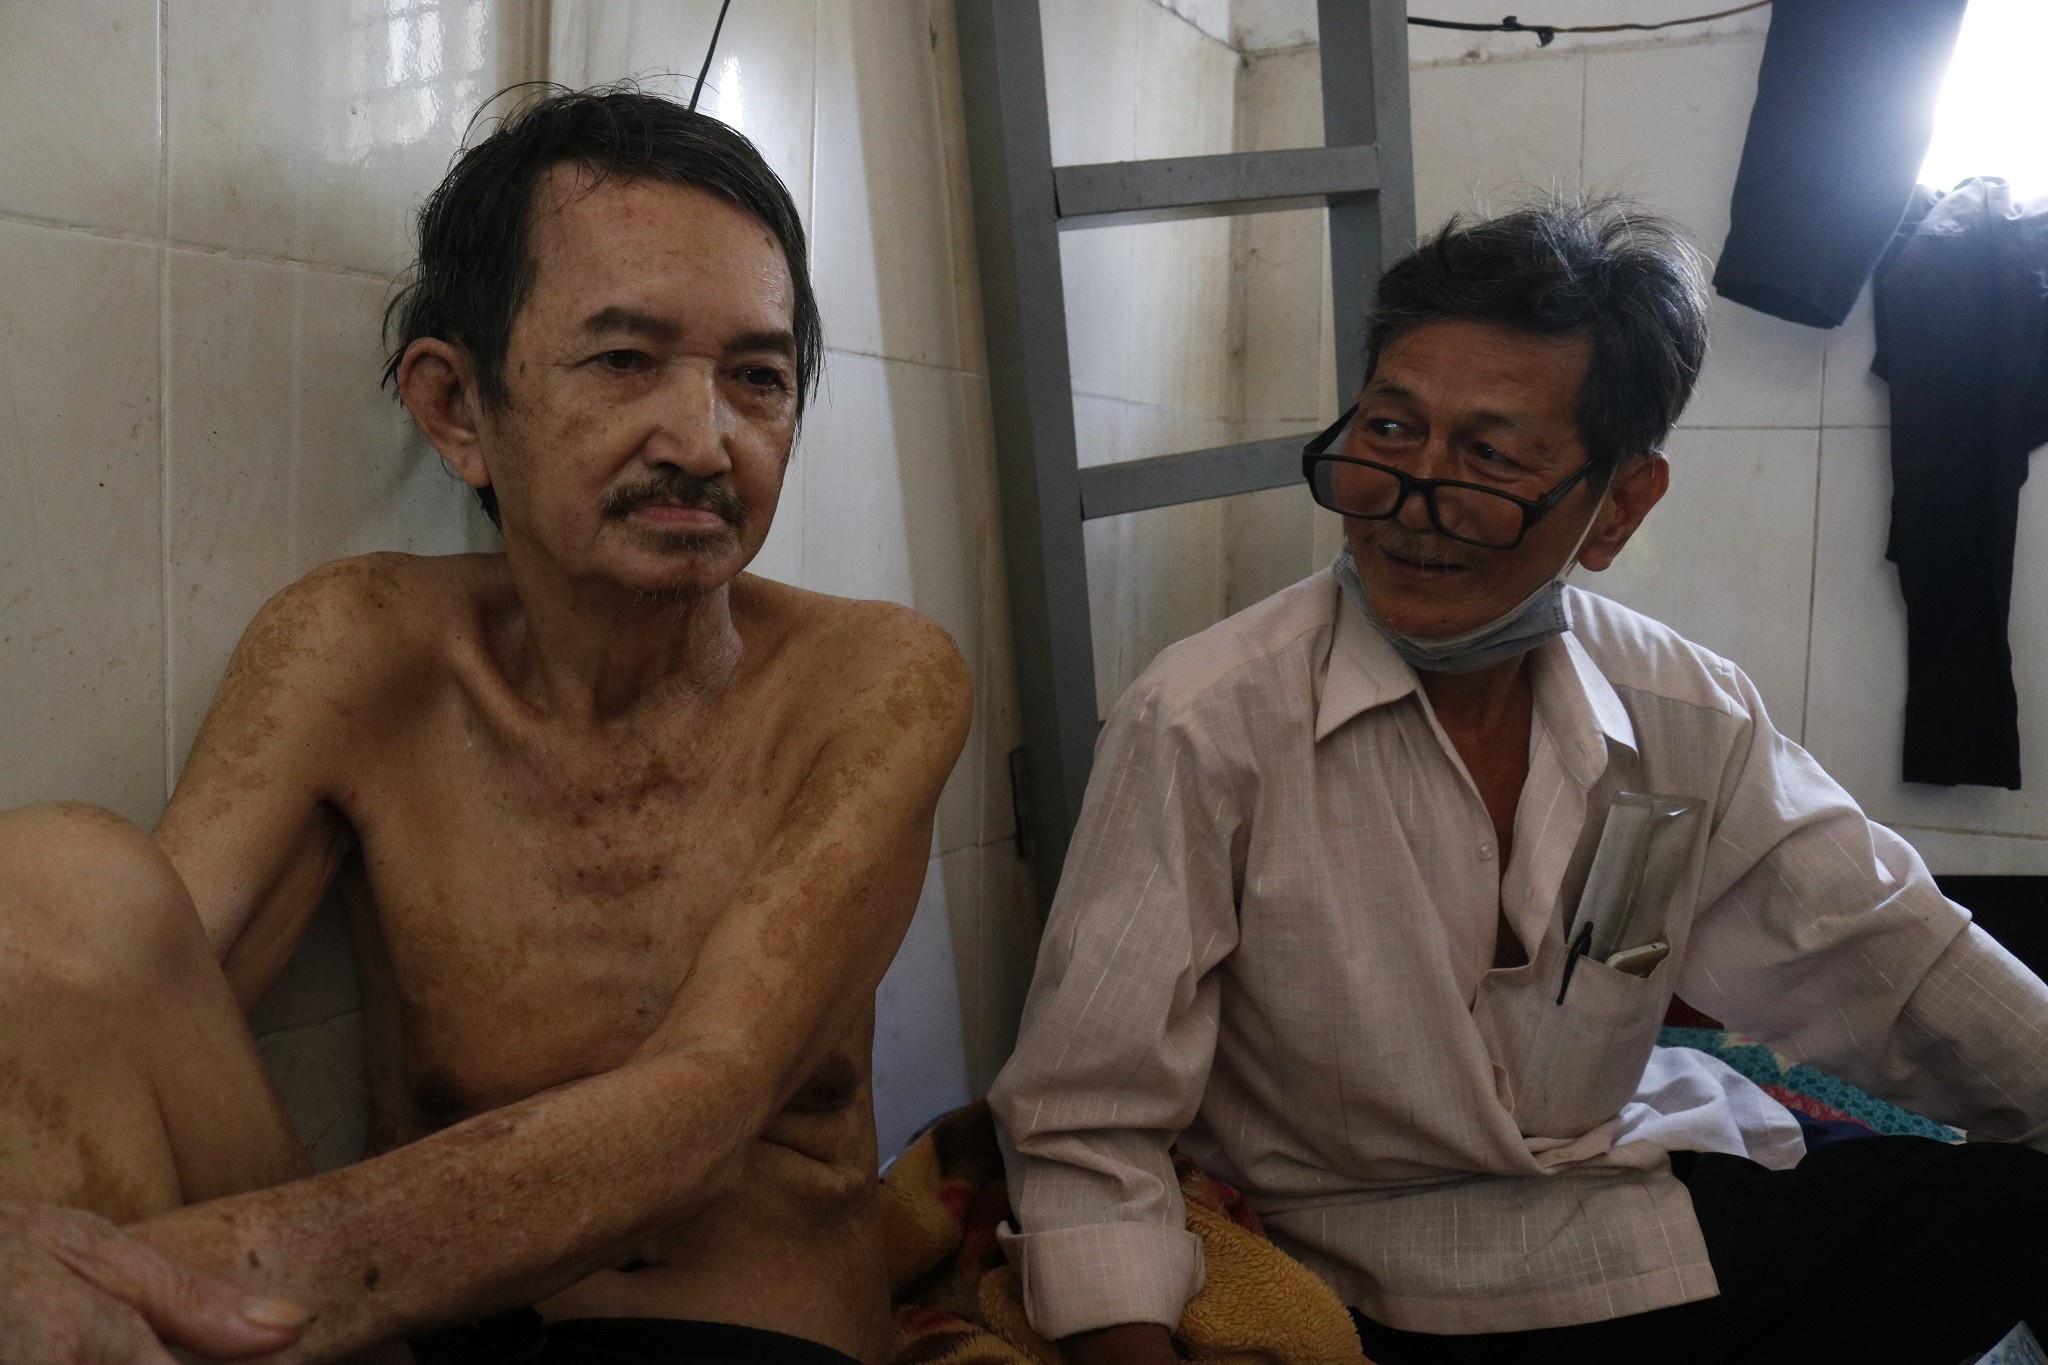 Tình bạn đẹp nhất Sài Gòn: Cụ ông ung thư đi làm kiếm tiền nuôi bạn mất trí nhớ - ảnh 3